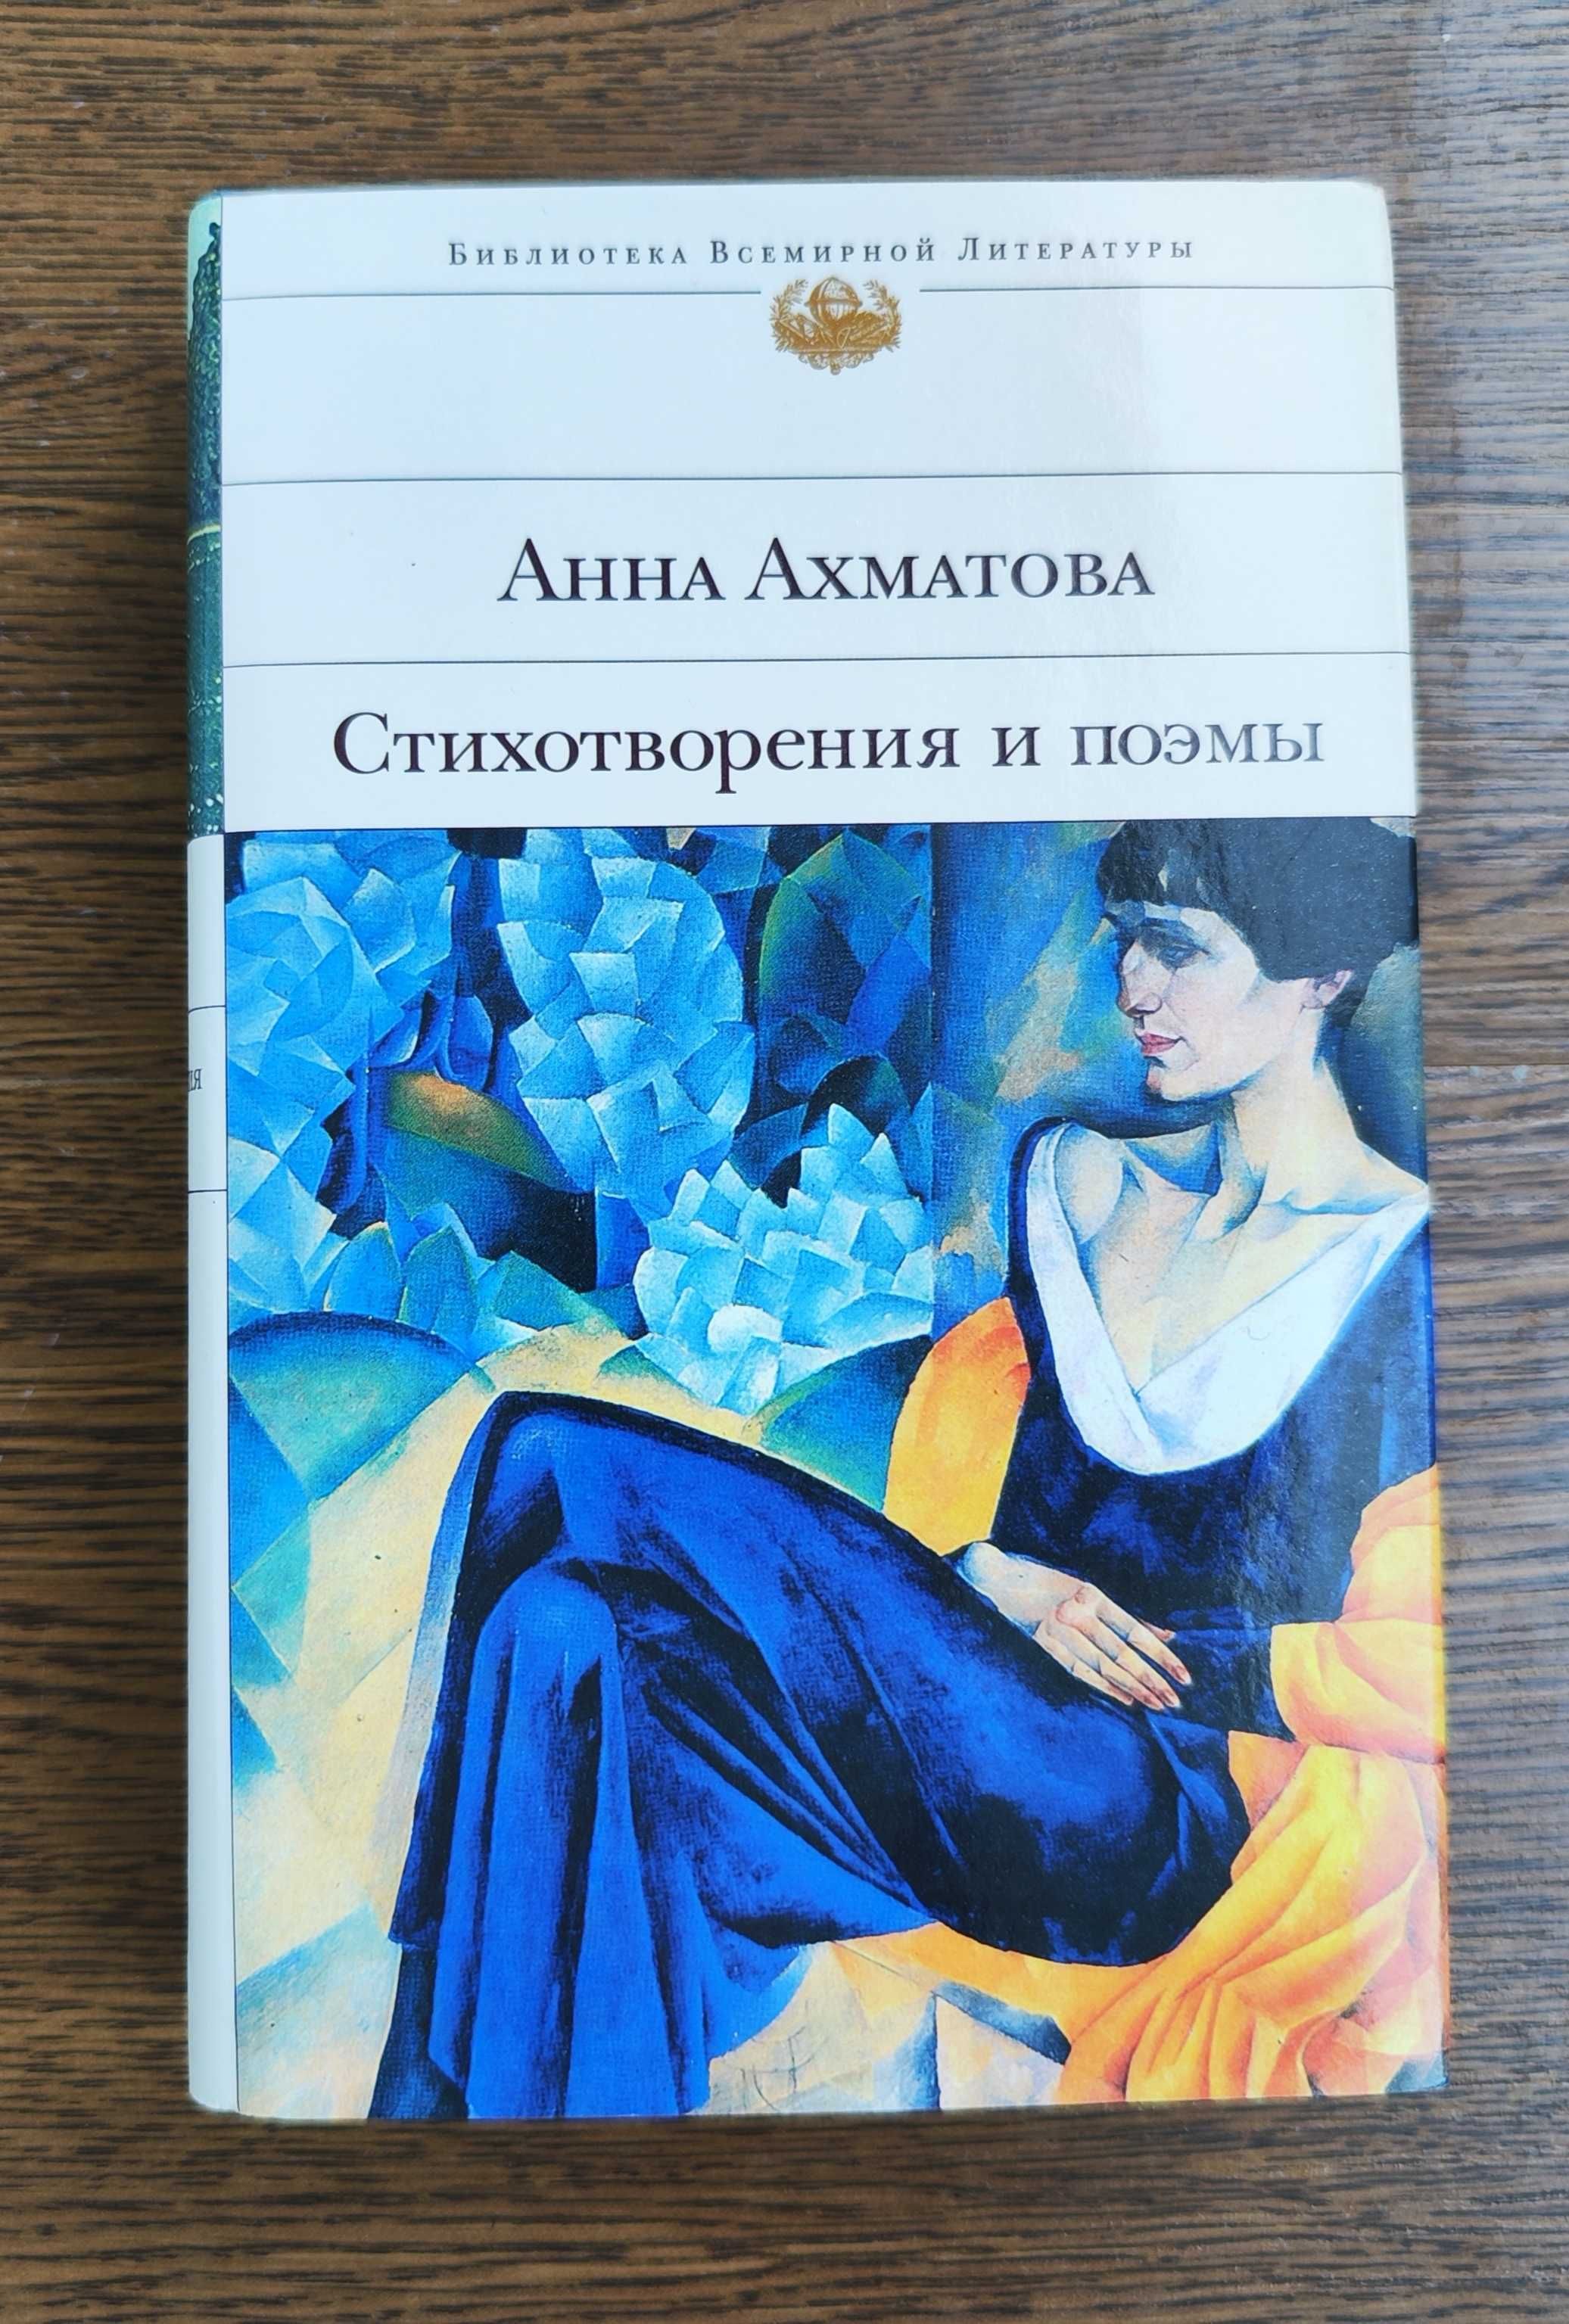 Анна Ахматова,Стихотворения, поэмы